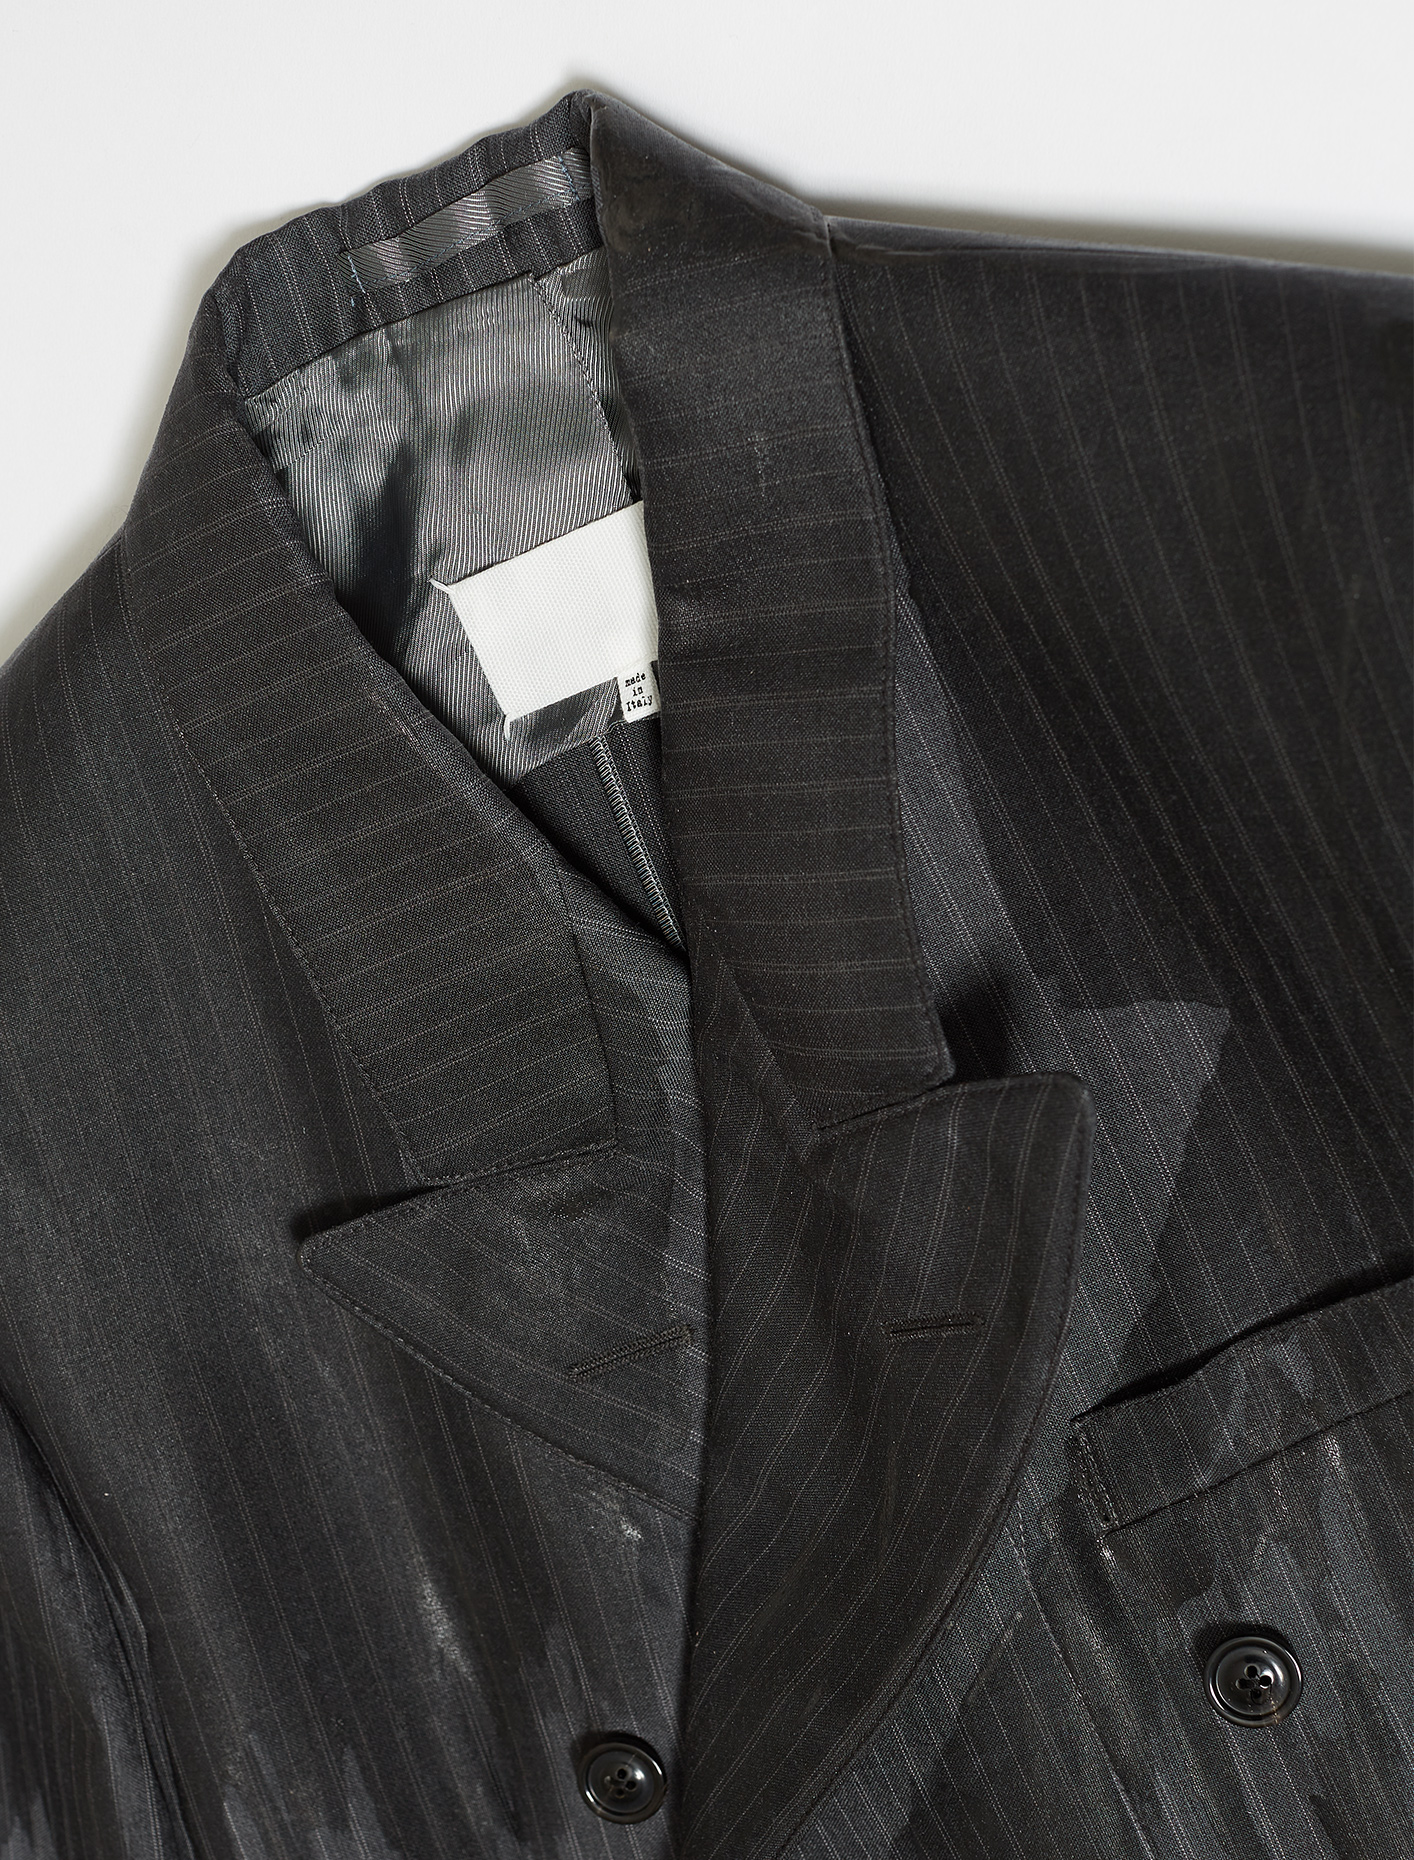 Maison Margiela Jacket in Dark Grey & Light Stripe | Voo Store Berlin ...